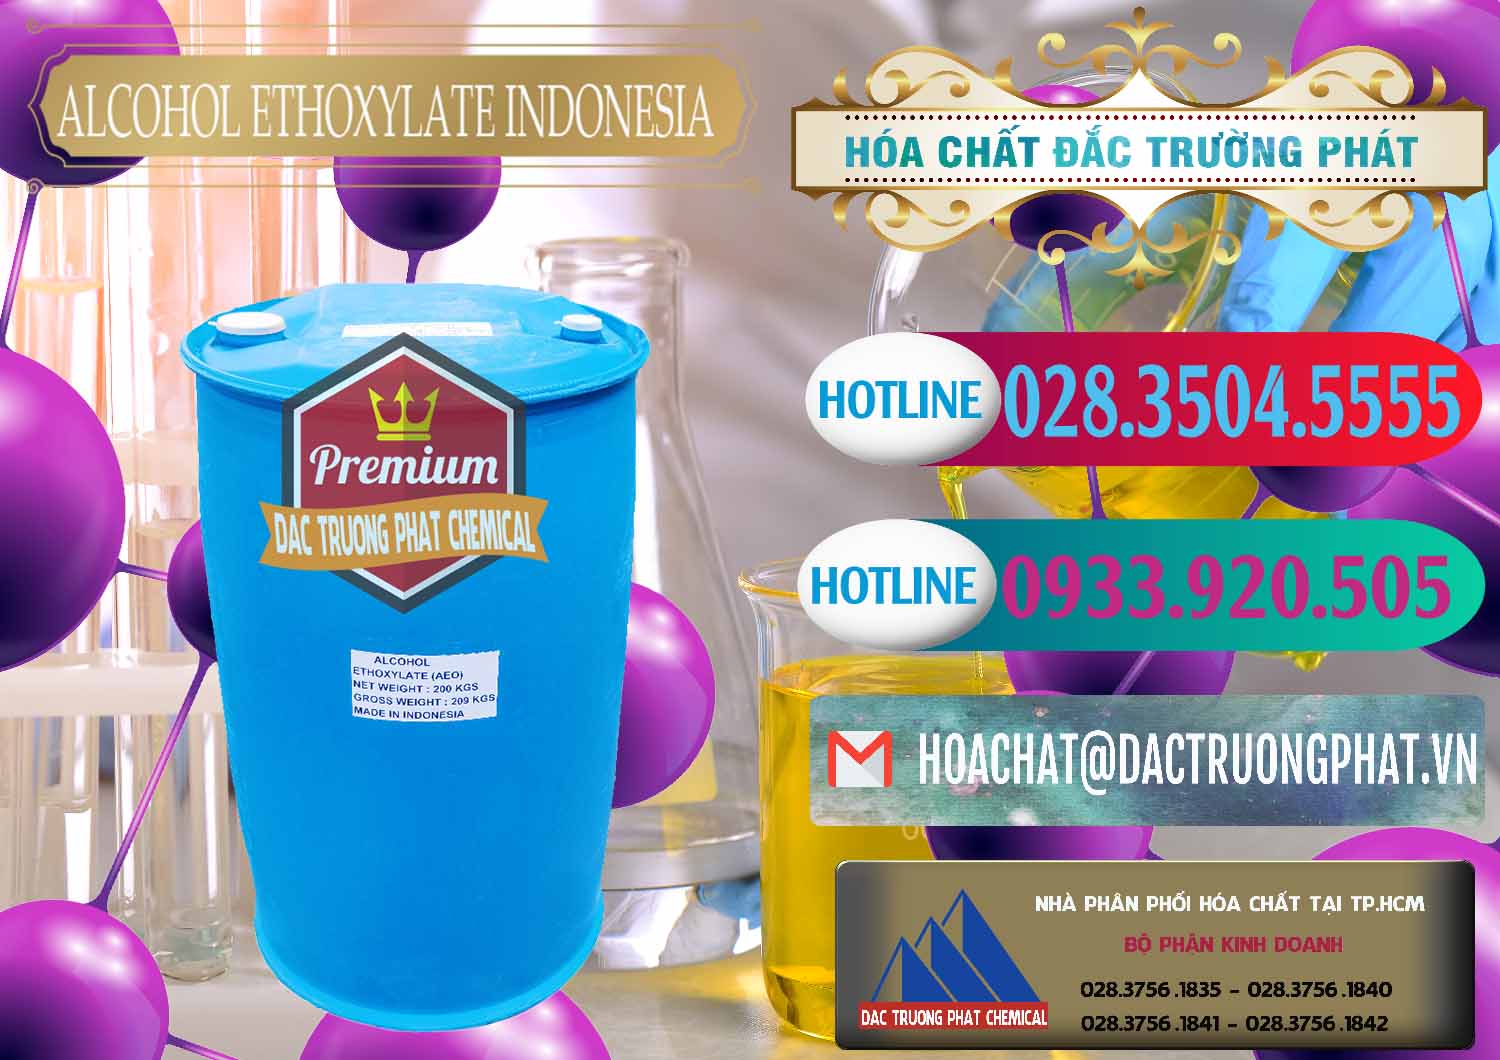 Nơi bán _ cung ứng Alcohol Ethoxylate Indonesia - 0308 - Cty chuyên phân phối ( kinh doanh ) hóa chất tại TP.HCM - truongphat.vn